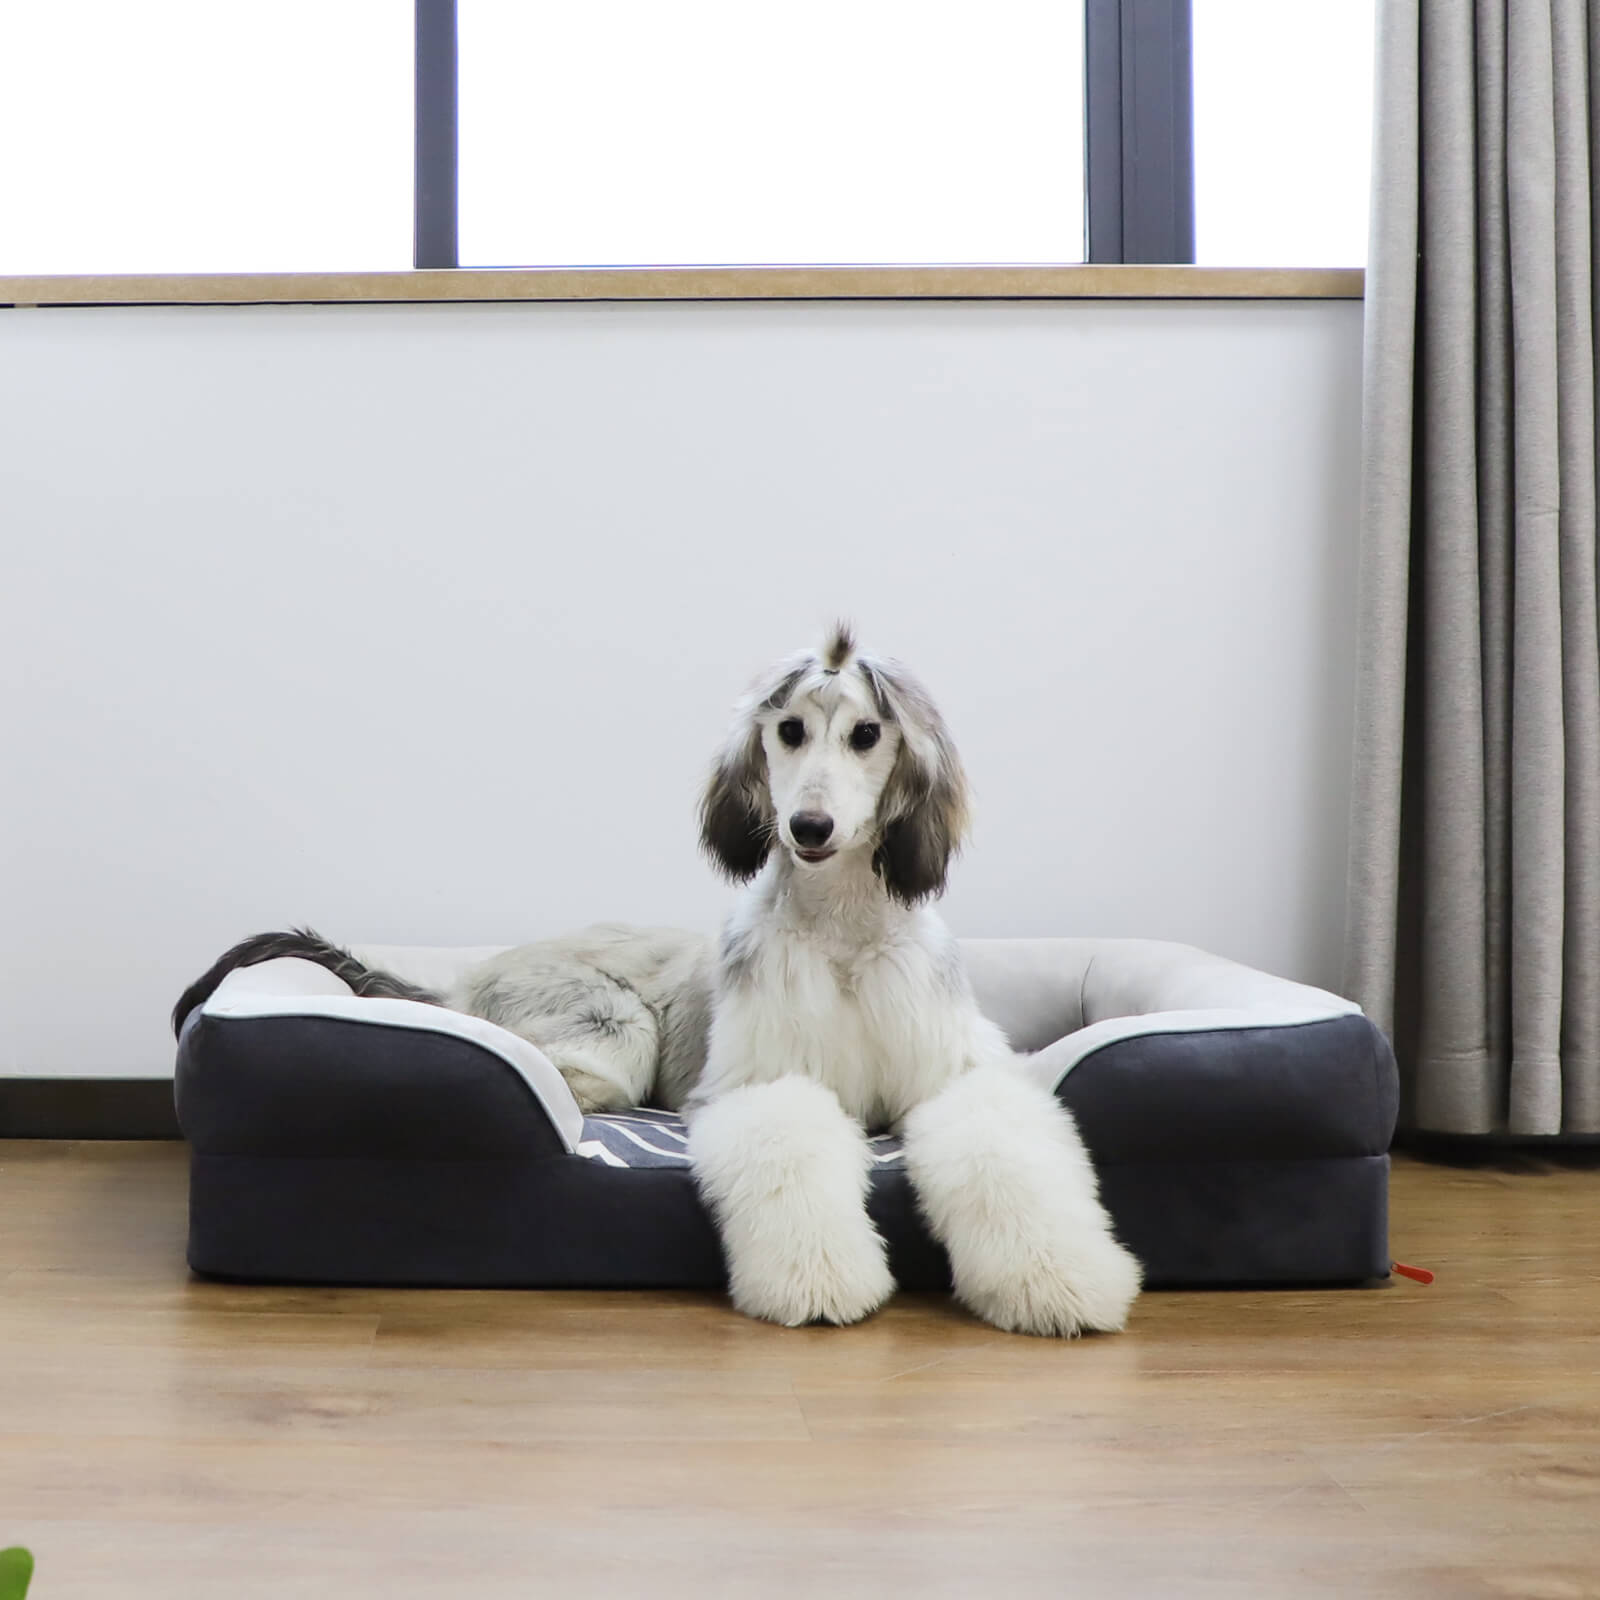 Laifug Striped Dog Sofa - large dog bed